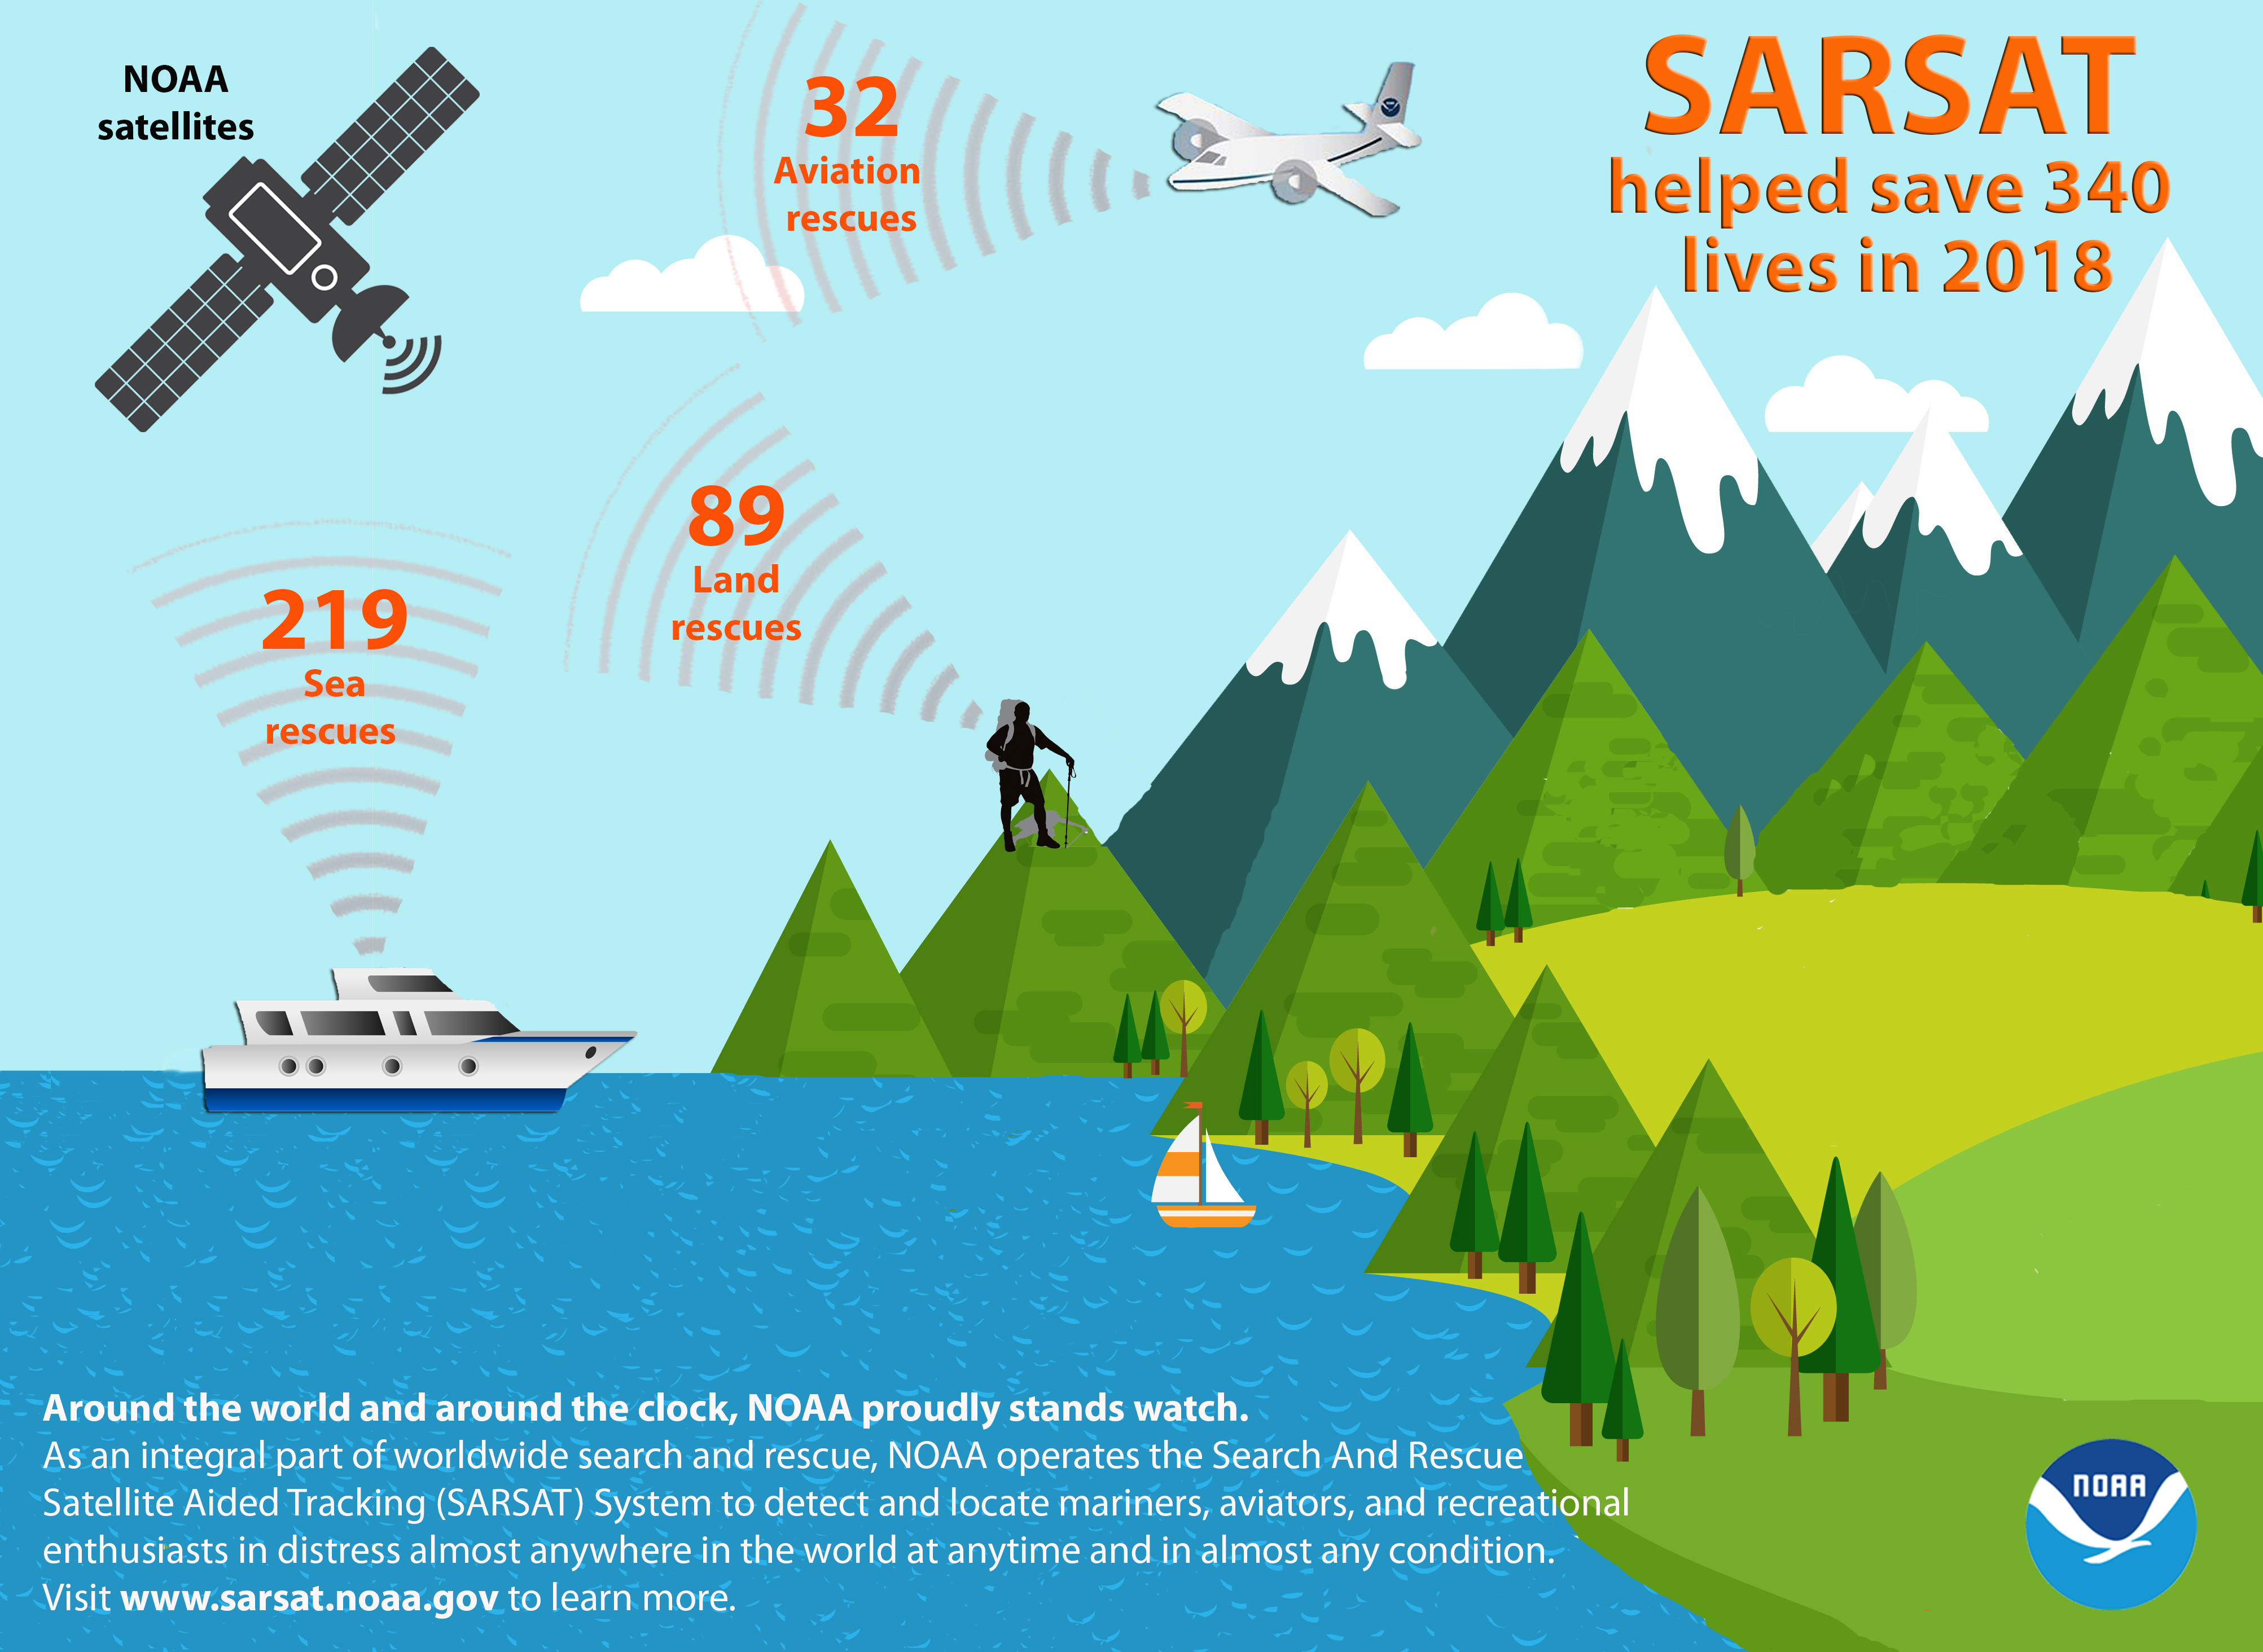 Sarsat rescues for 2018. 